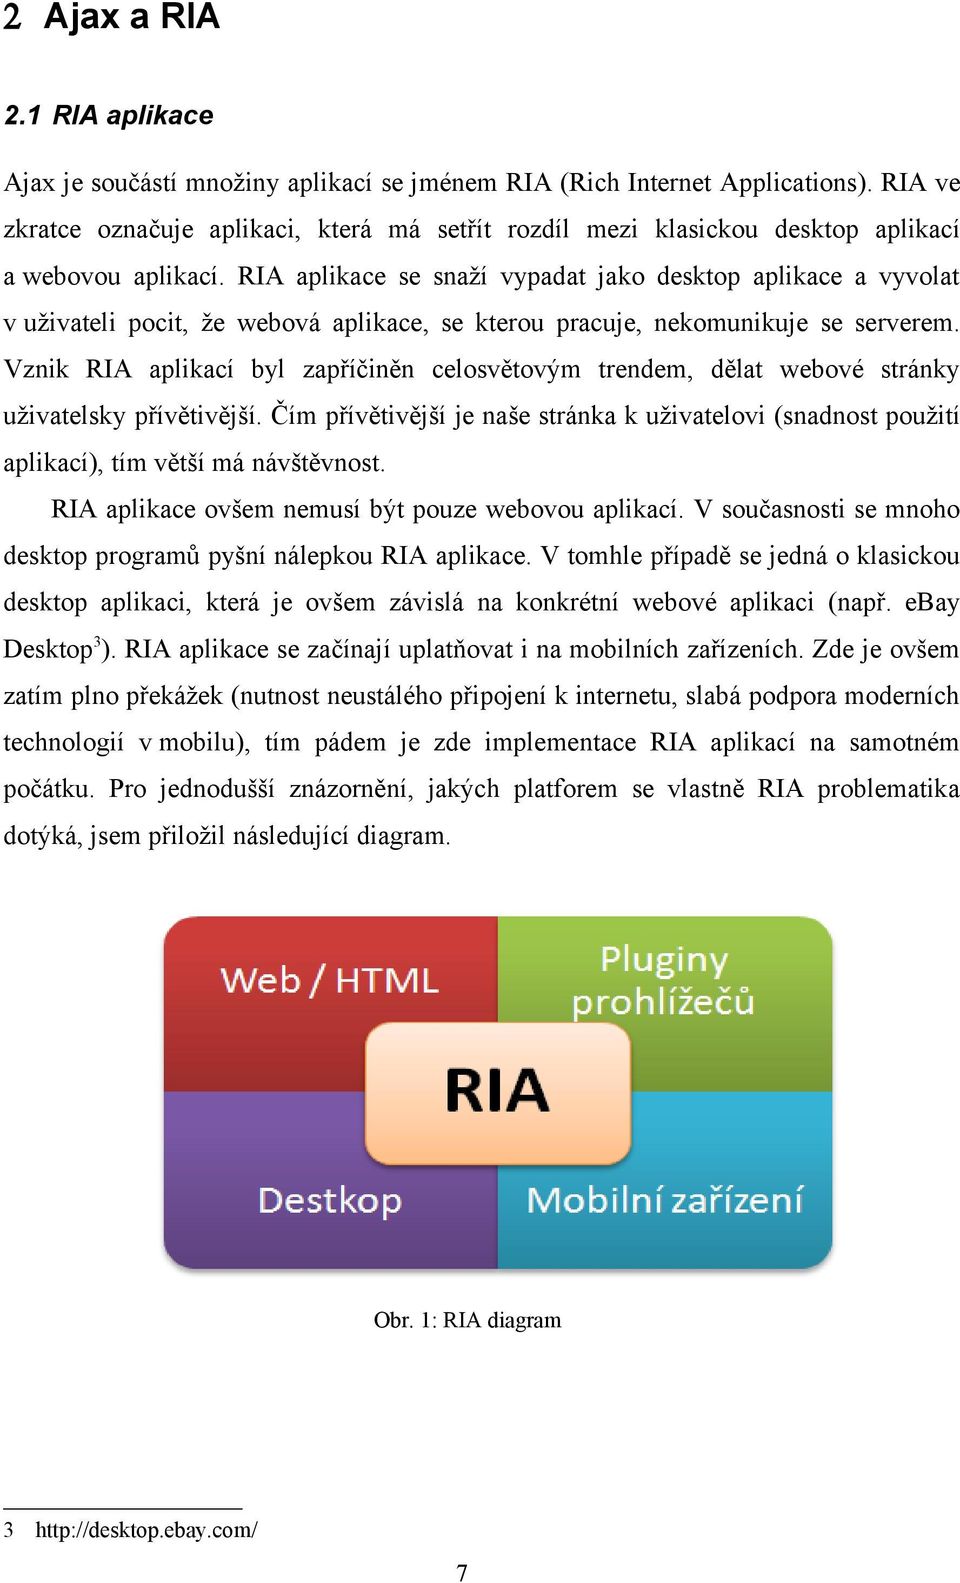 RIA aplikace se snaží vypadat jako desktop aplikace a vyvolat v uživateli pocit, že webová aplikace, se kterou pracuje, nekomunikuje se serverem.